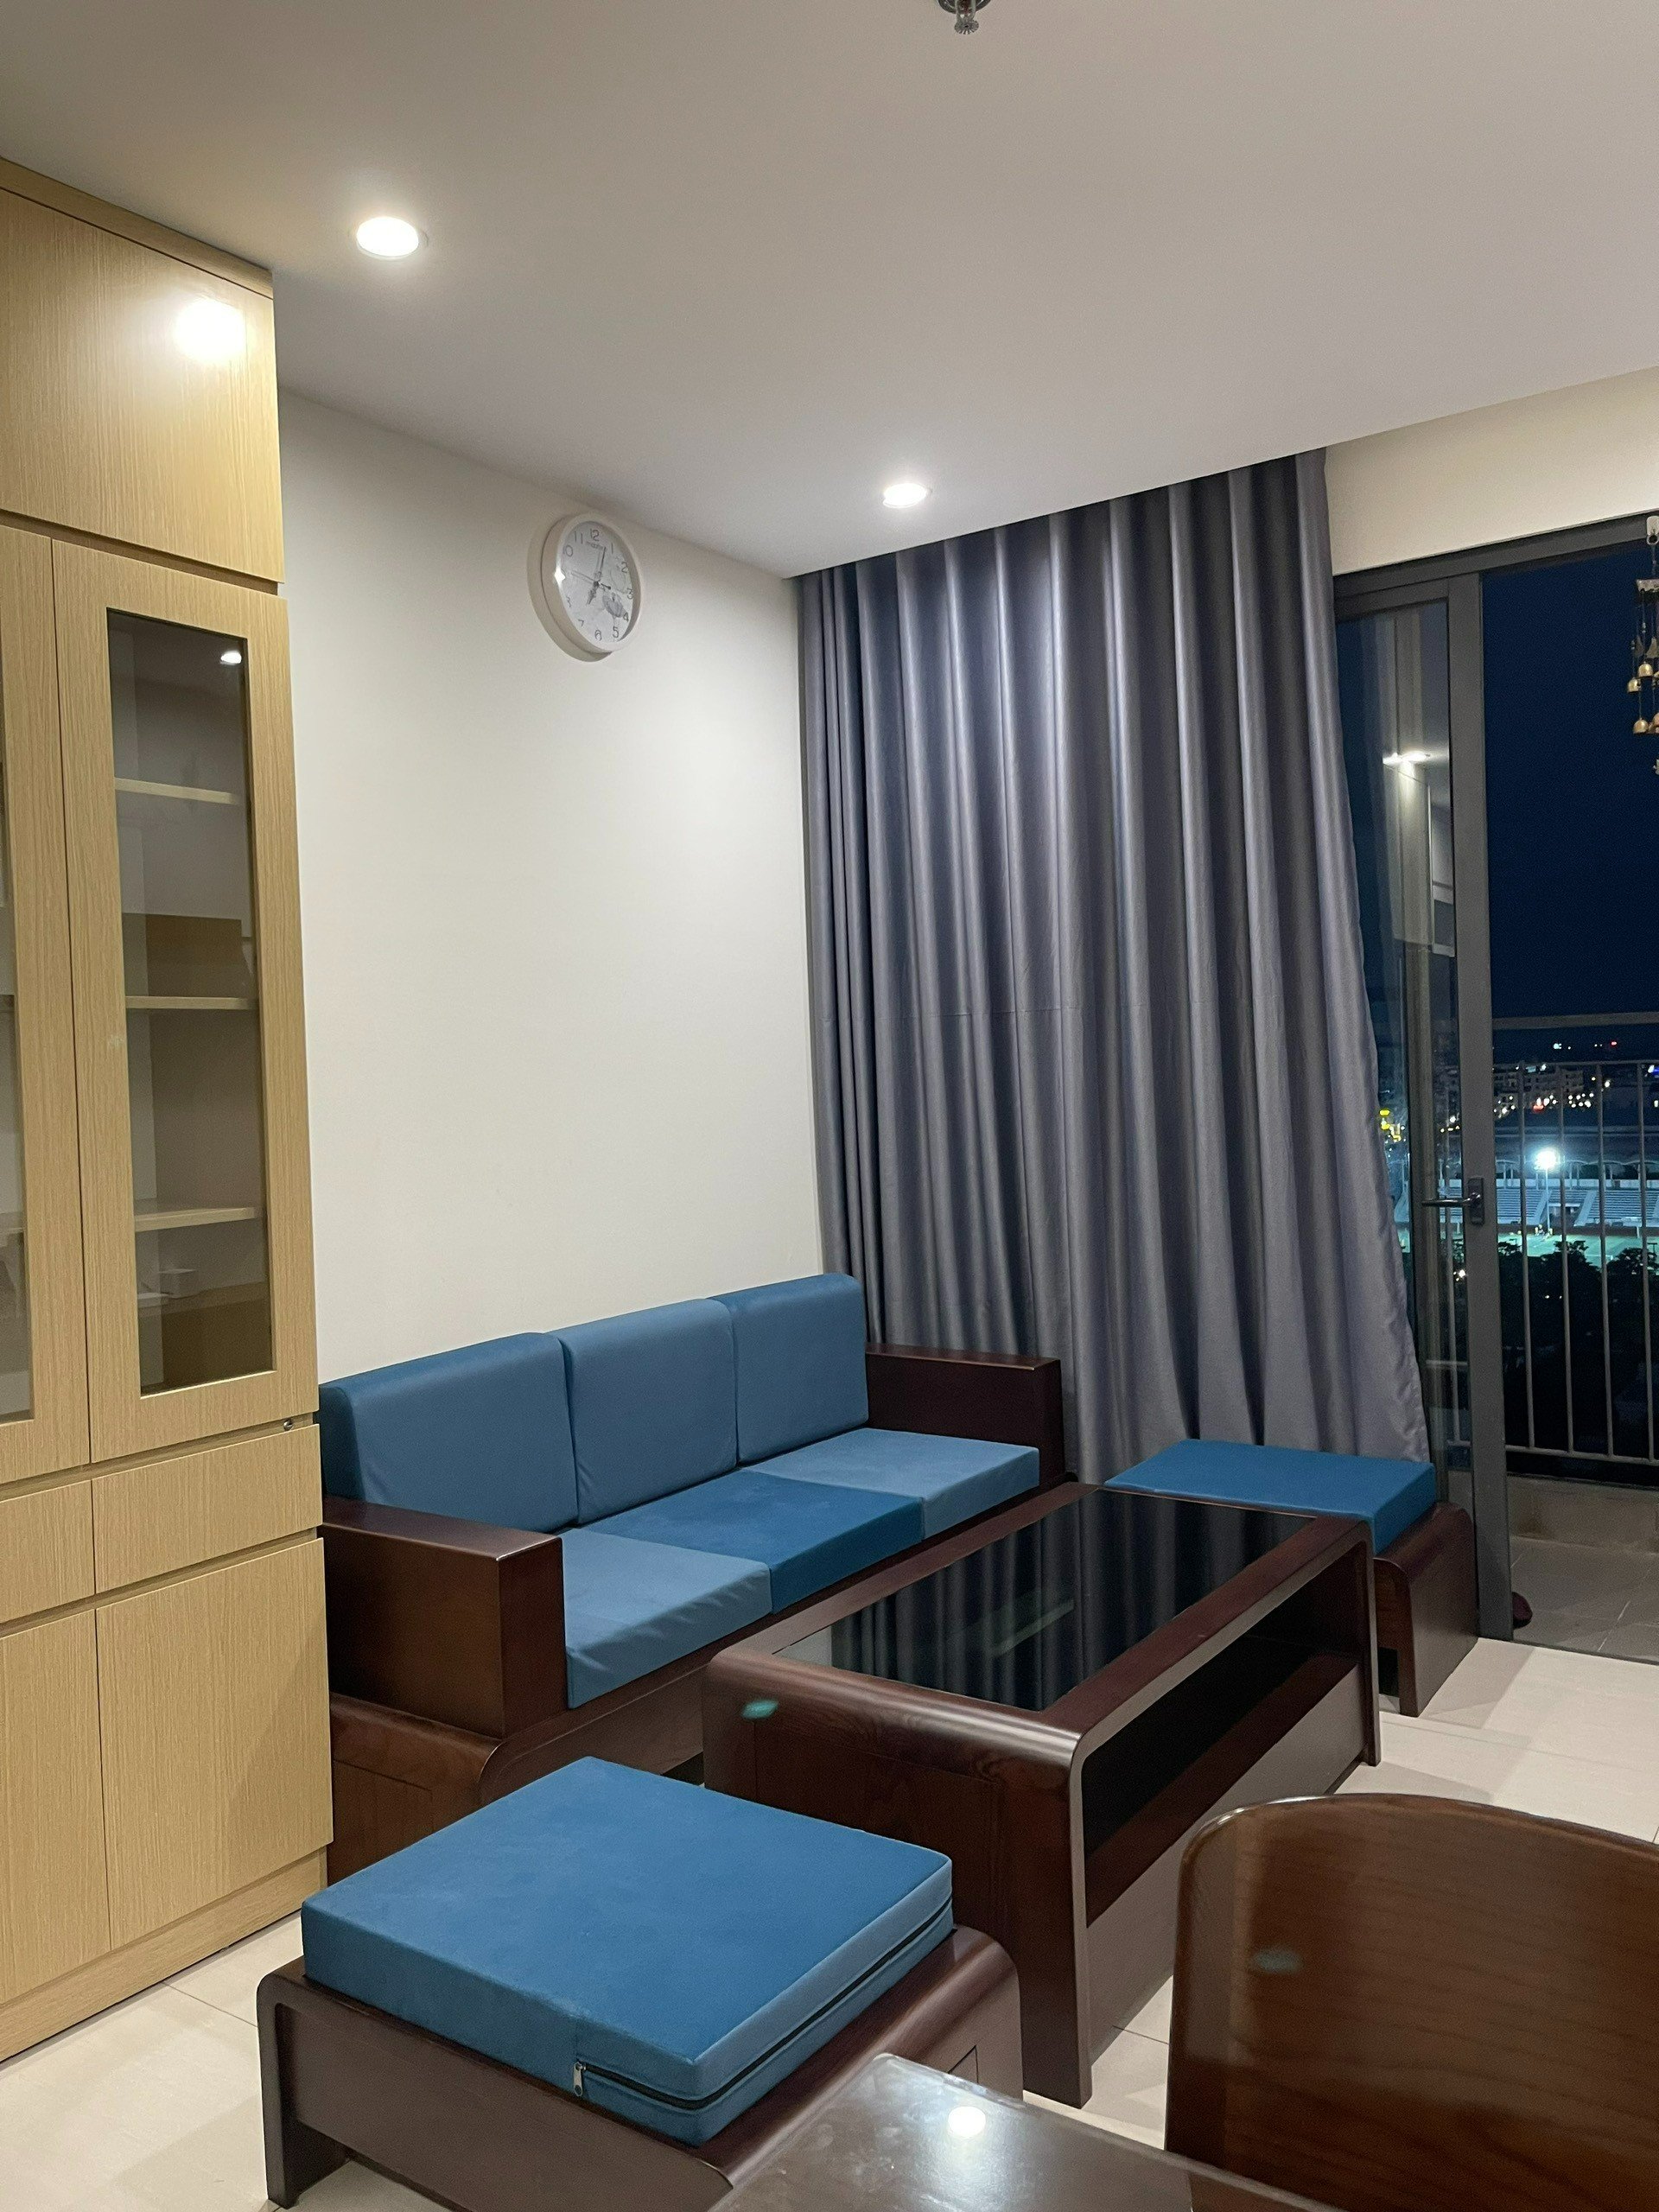 Cho thuê căn hộ góc 3 phòng ngủ toà S2.15 Vinhomes Ocean Park diện tích 75m2 full đồ tầng thấp view trường VinUni